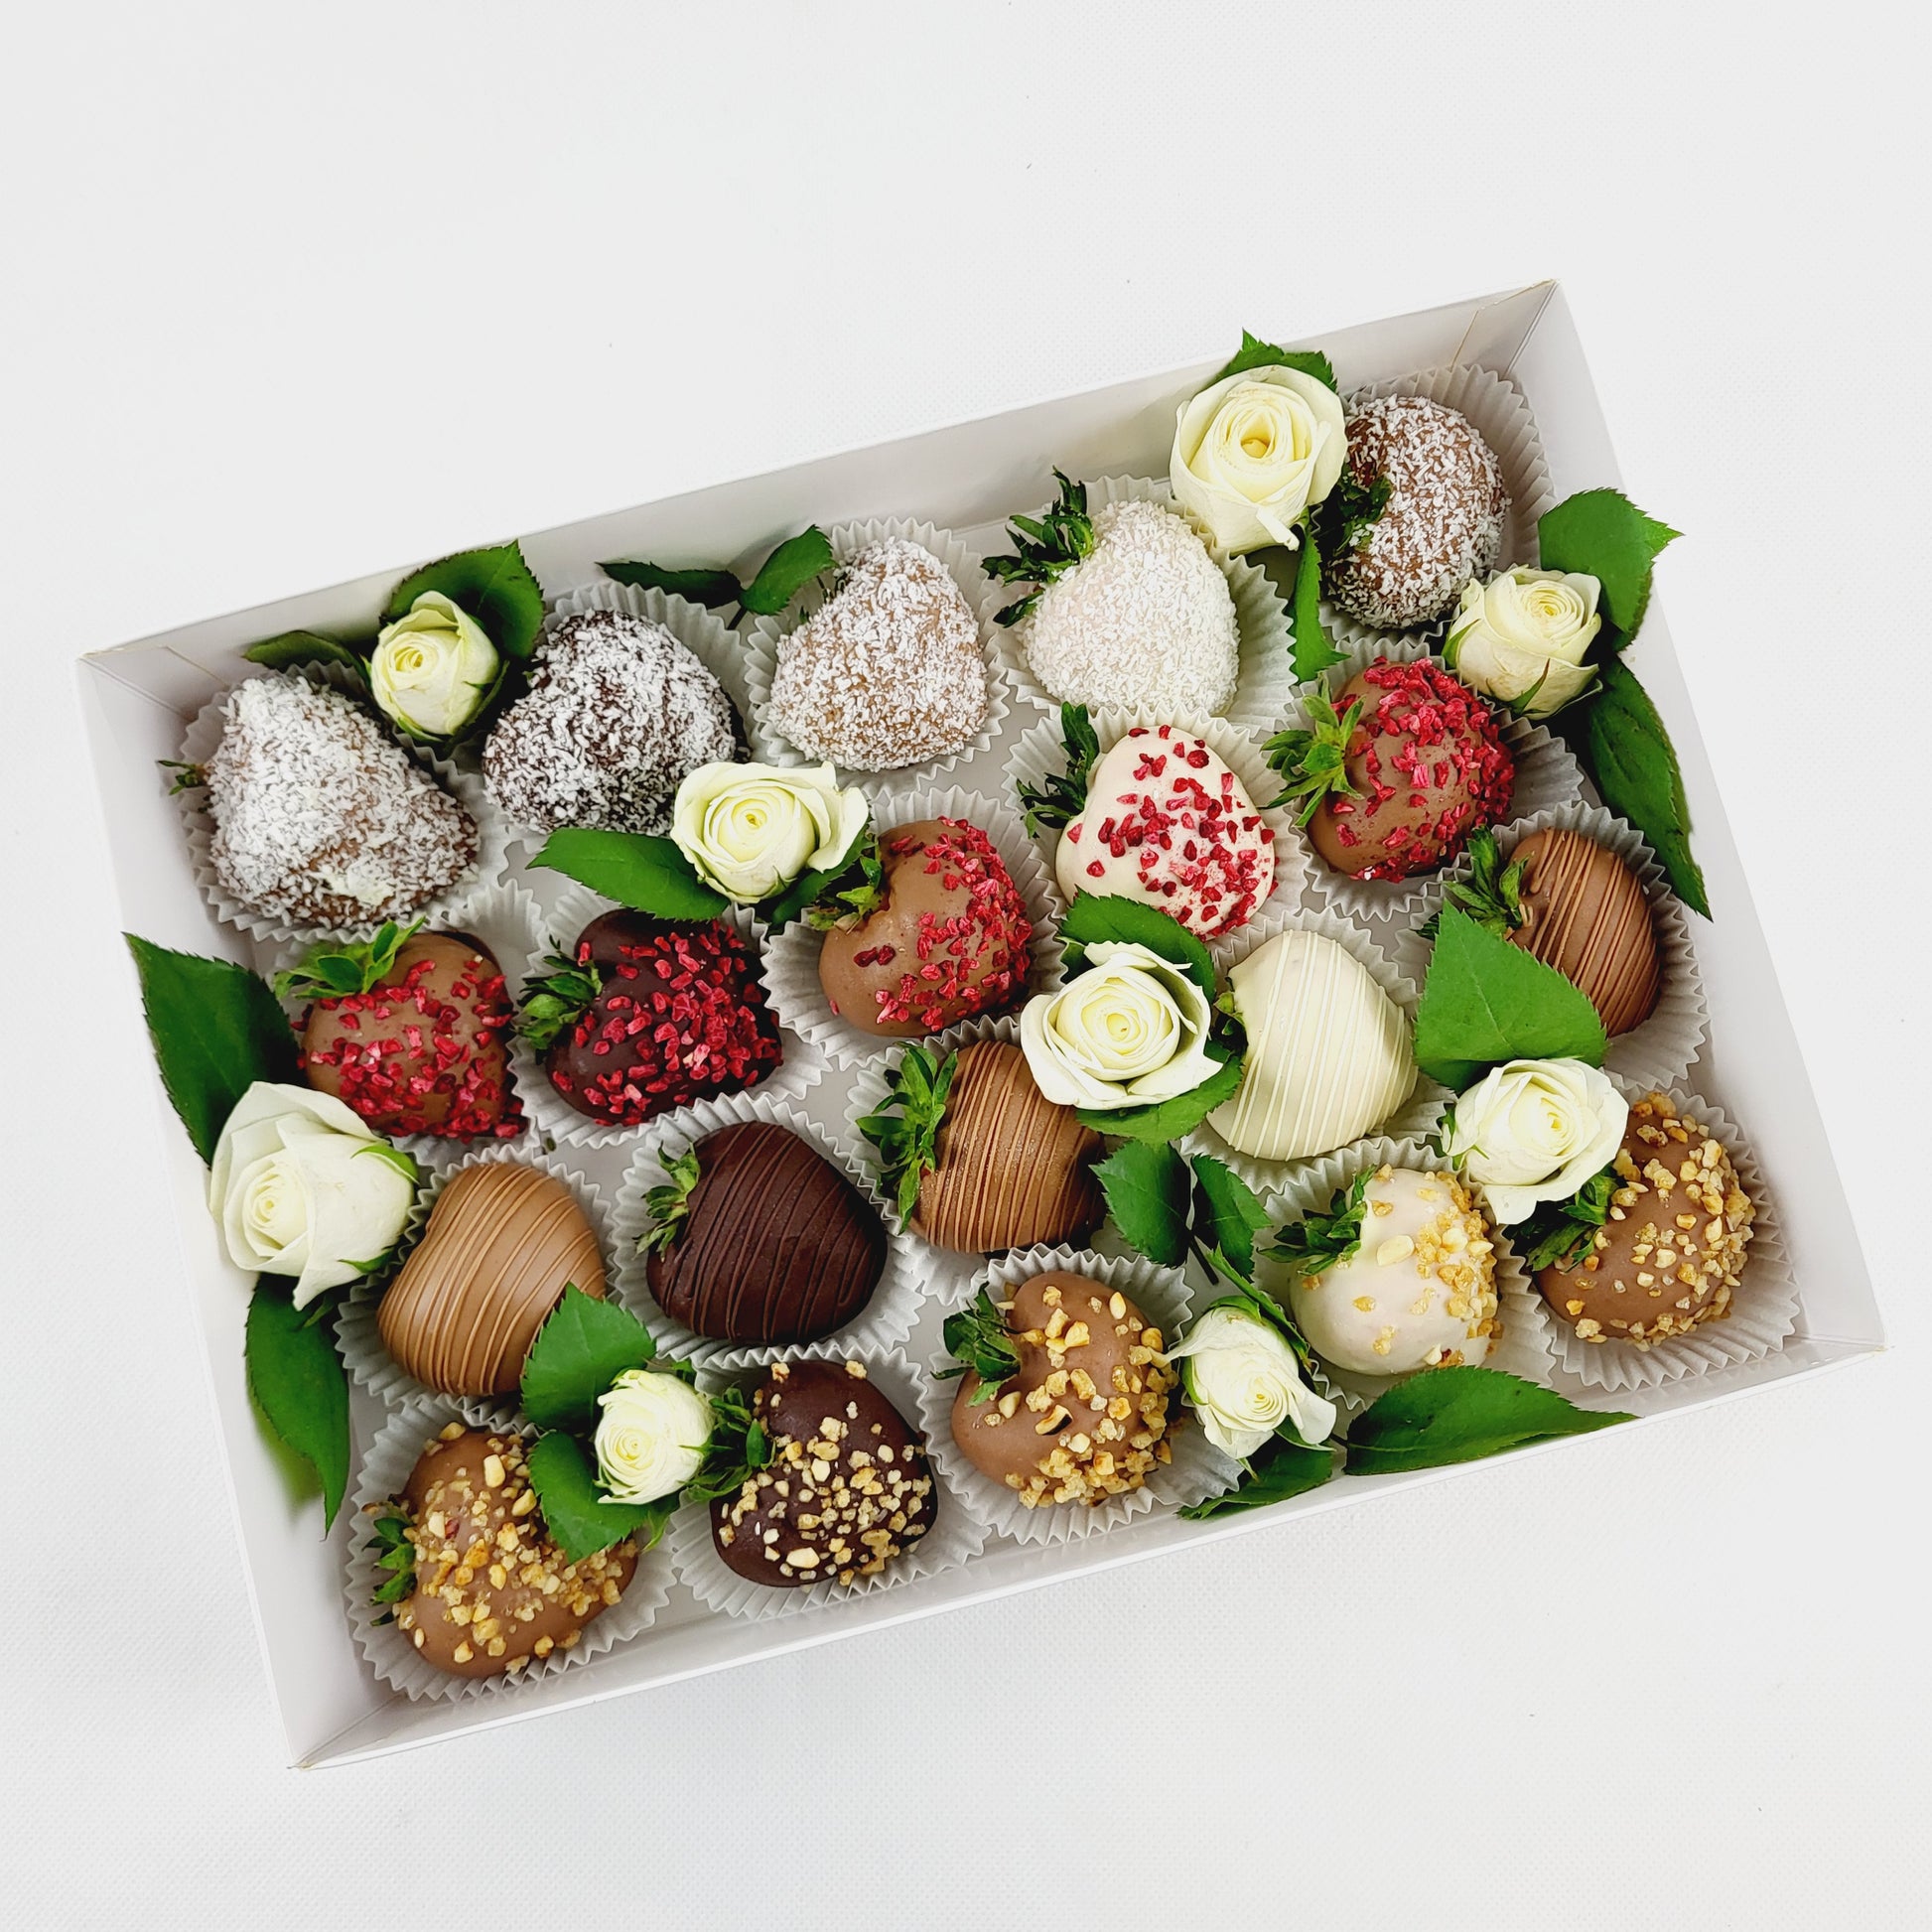 Choco Fruits Schokoerdbeeren und Schokofrüchte mit verschiedenen Topping und mit weißen Rosen dekoriert